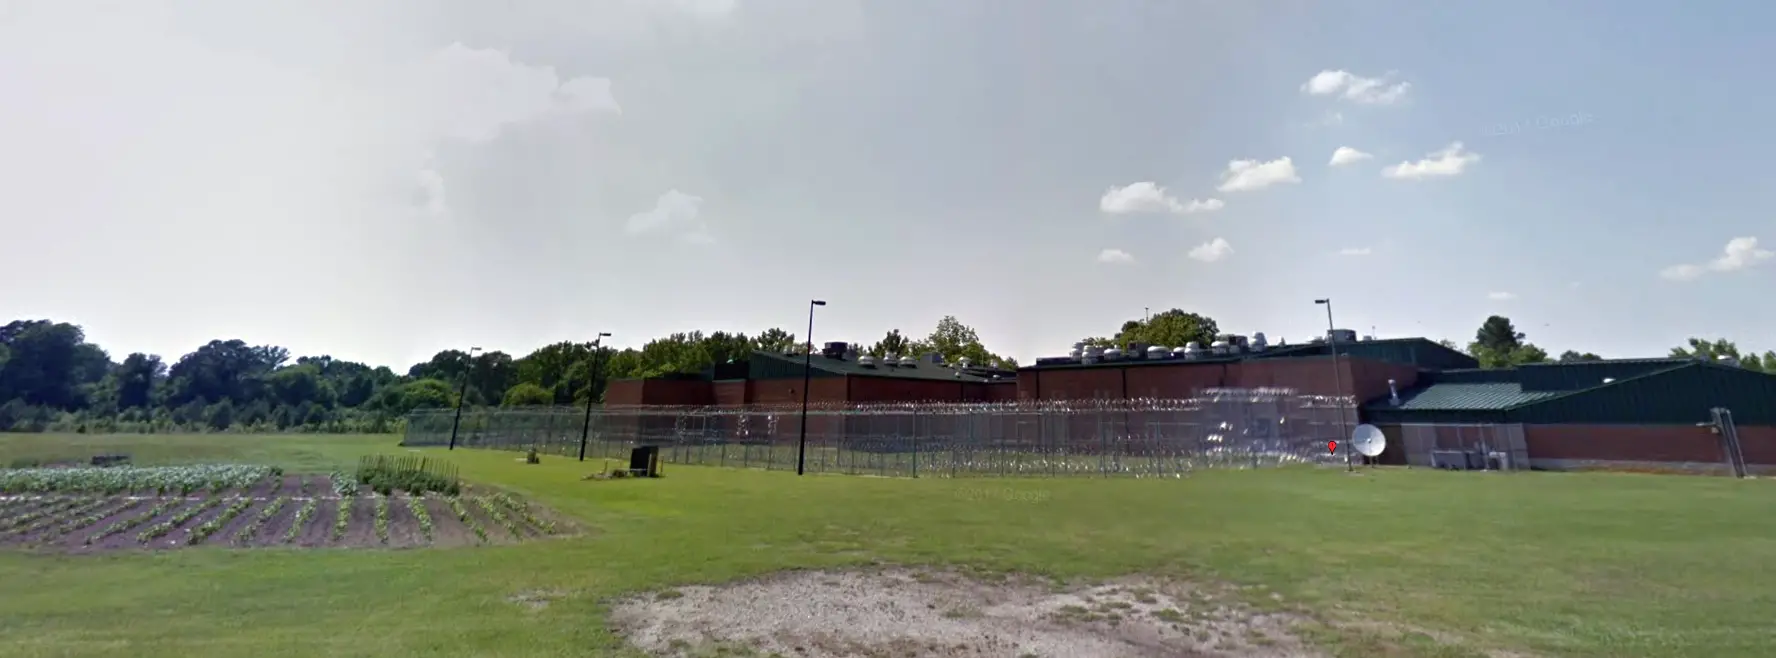 Photos Dillon County Detention Center 1